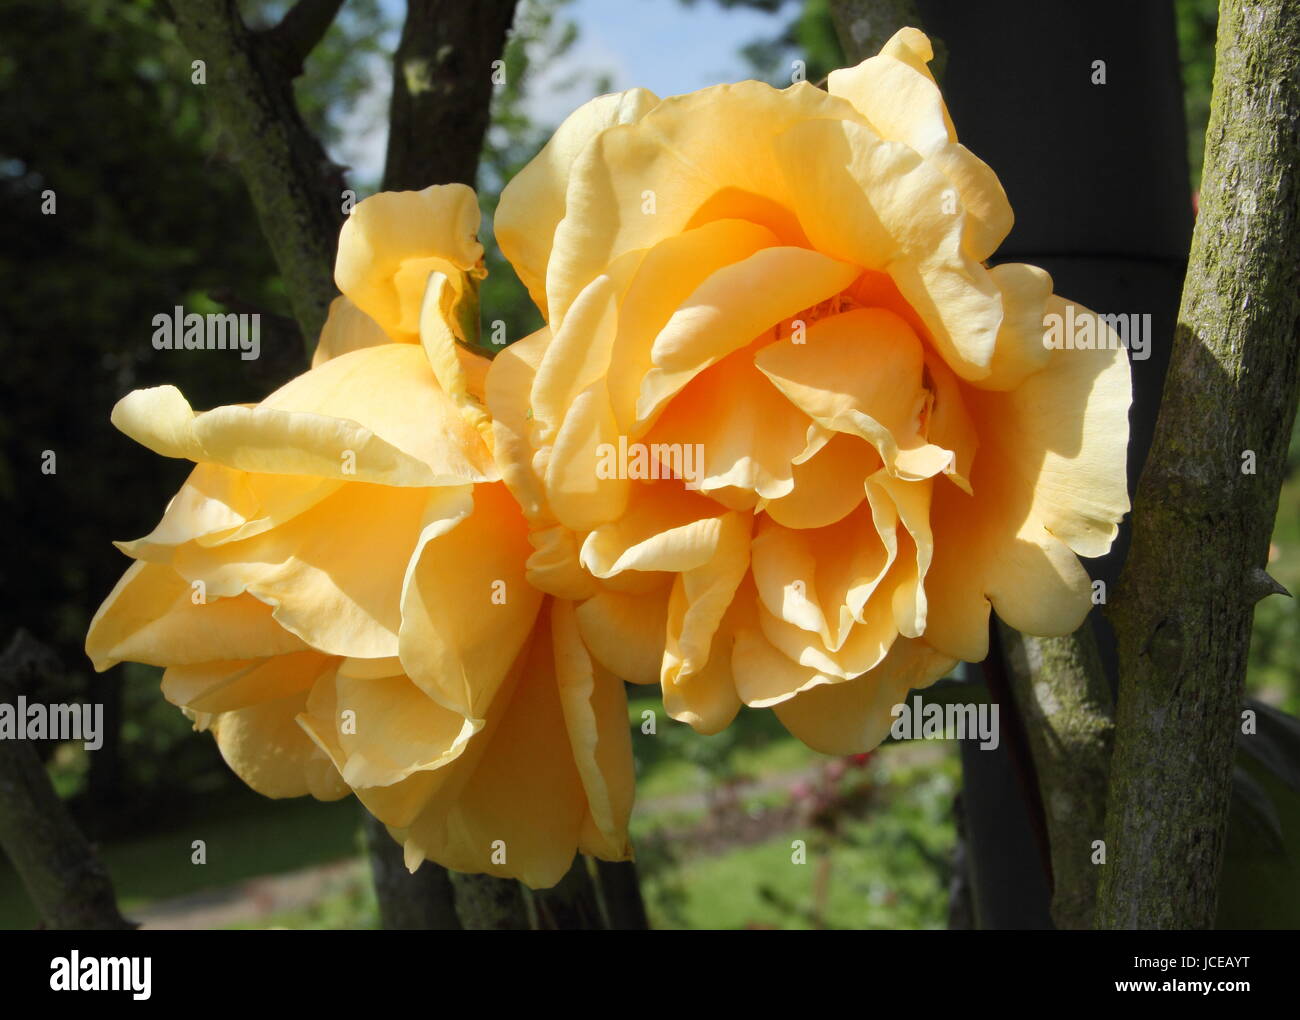 Rosa 'Lady Hillingdon" (escalade Lady Hillingdon), un parfum d'abricot, rose thé escalade jaune en pleine floraison en juin dans un jardin anglais Banque D'Images